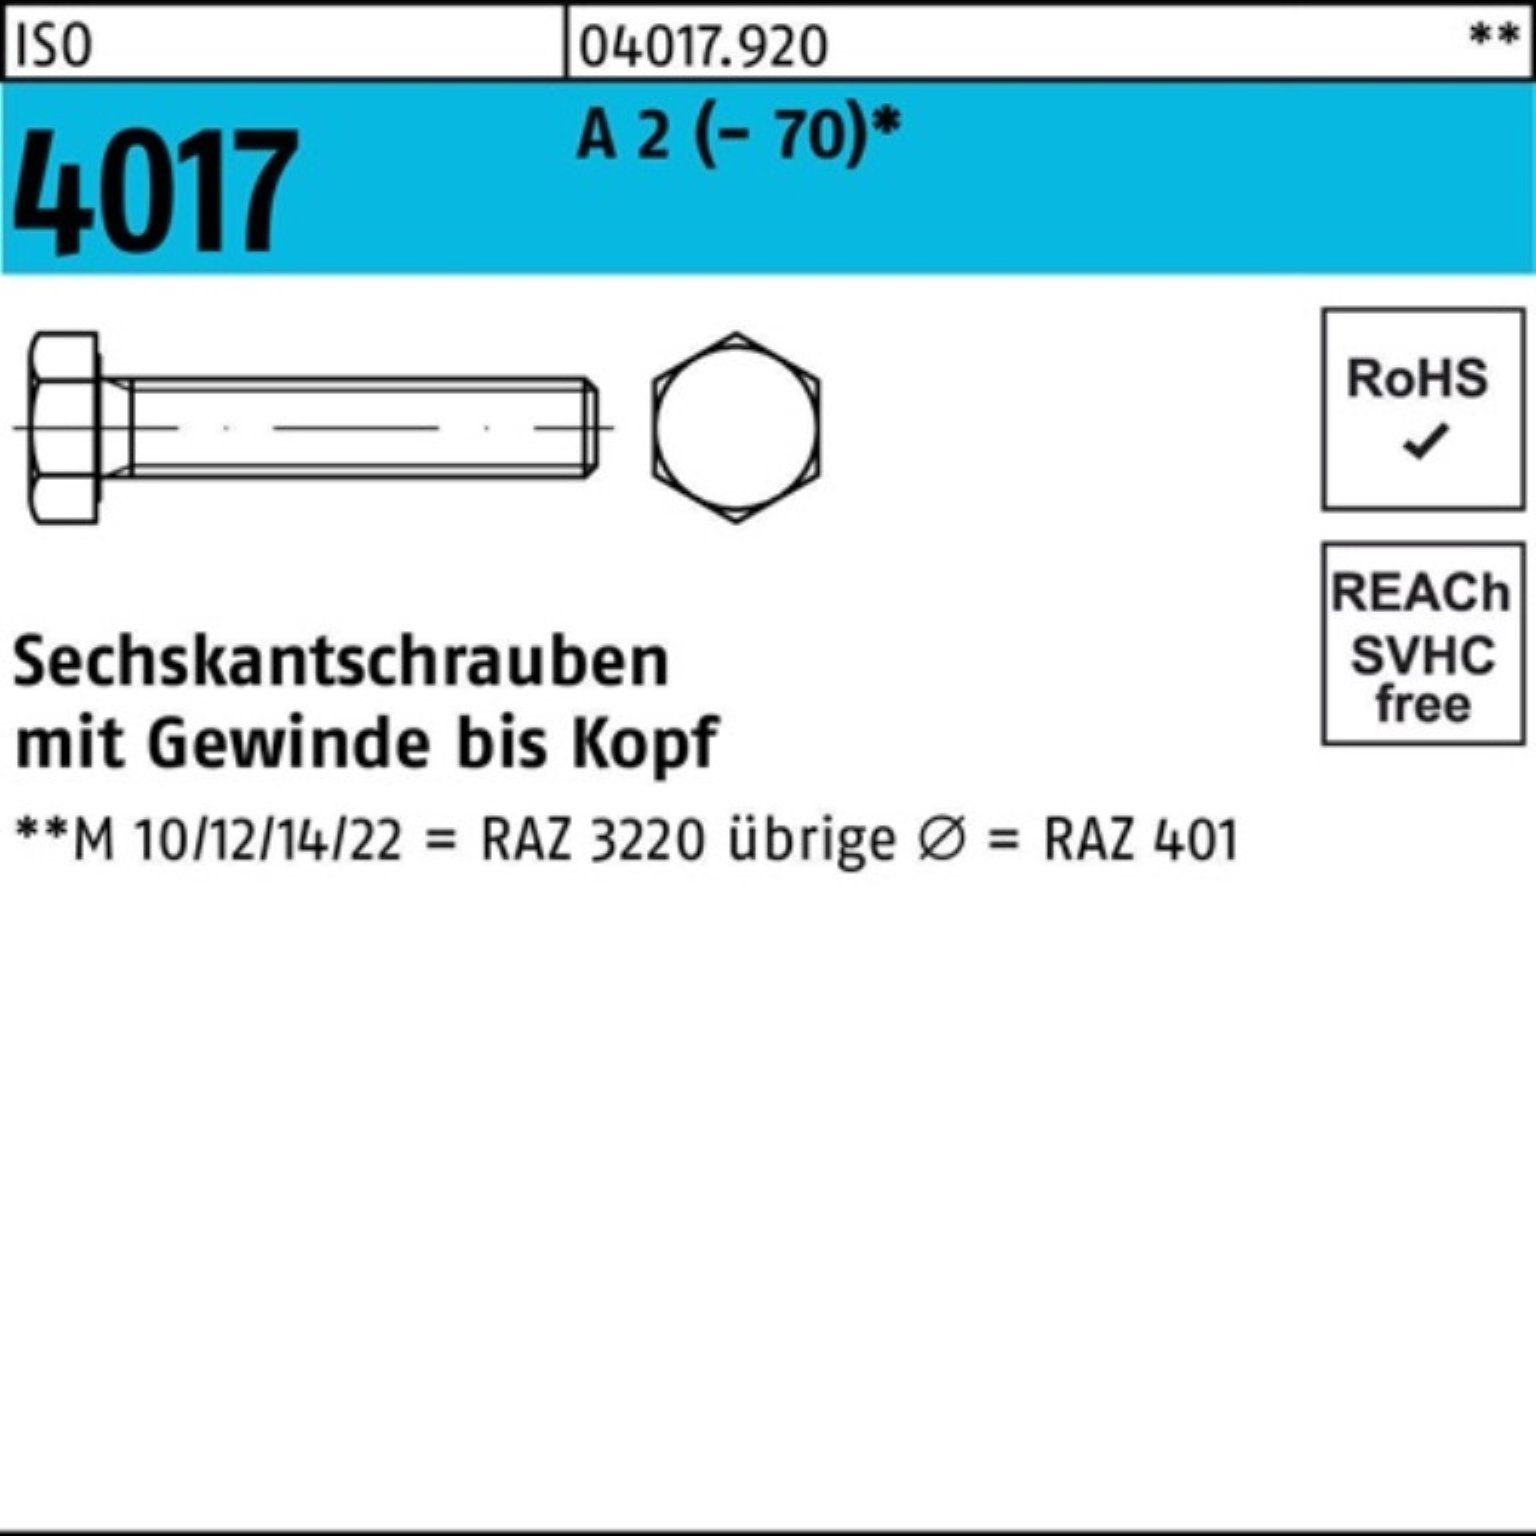 Bufab Sechskantschraube 100er Pack Sechskantschraube ISO 4017 VG M14x 140 A 2 (70) 25 Stück